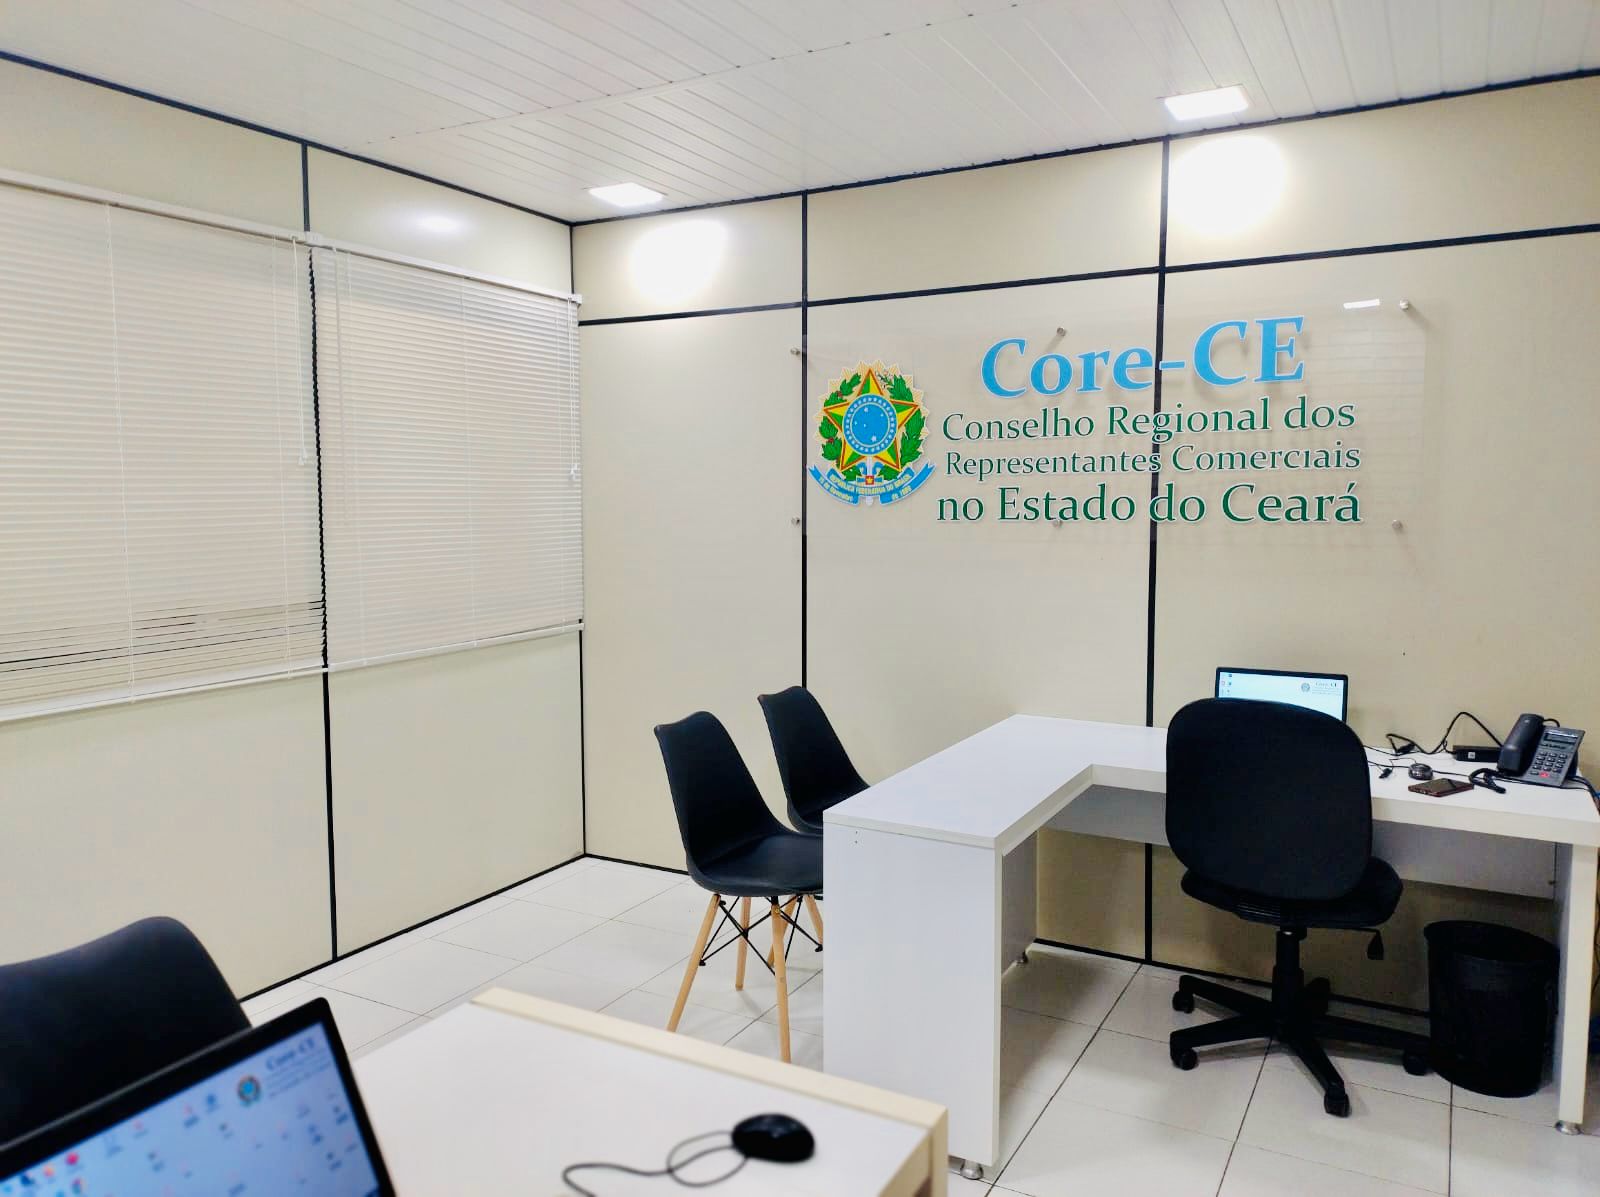 Representantes Comerciais do Cariri tem acesso a serviços do Core-CE no escritório da região